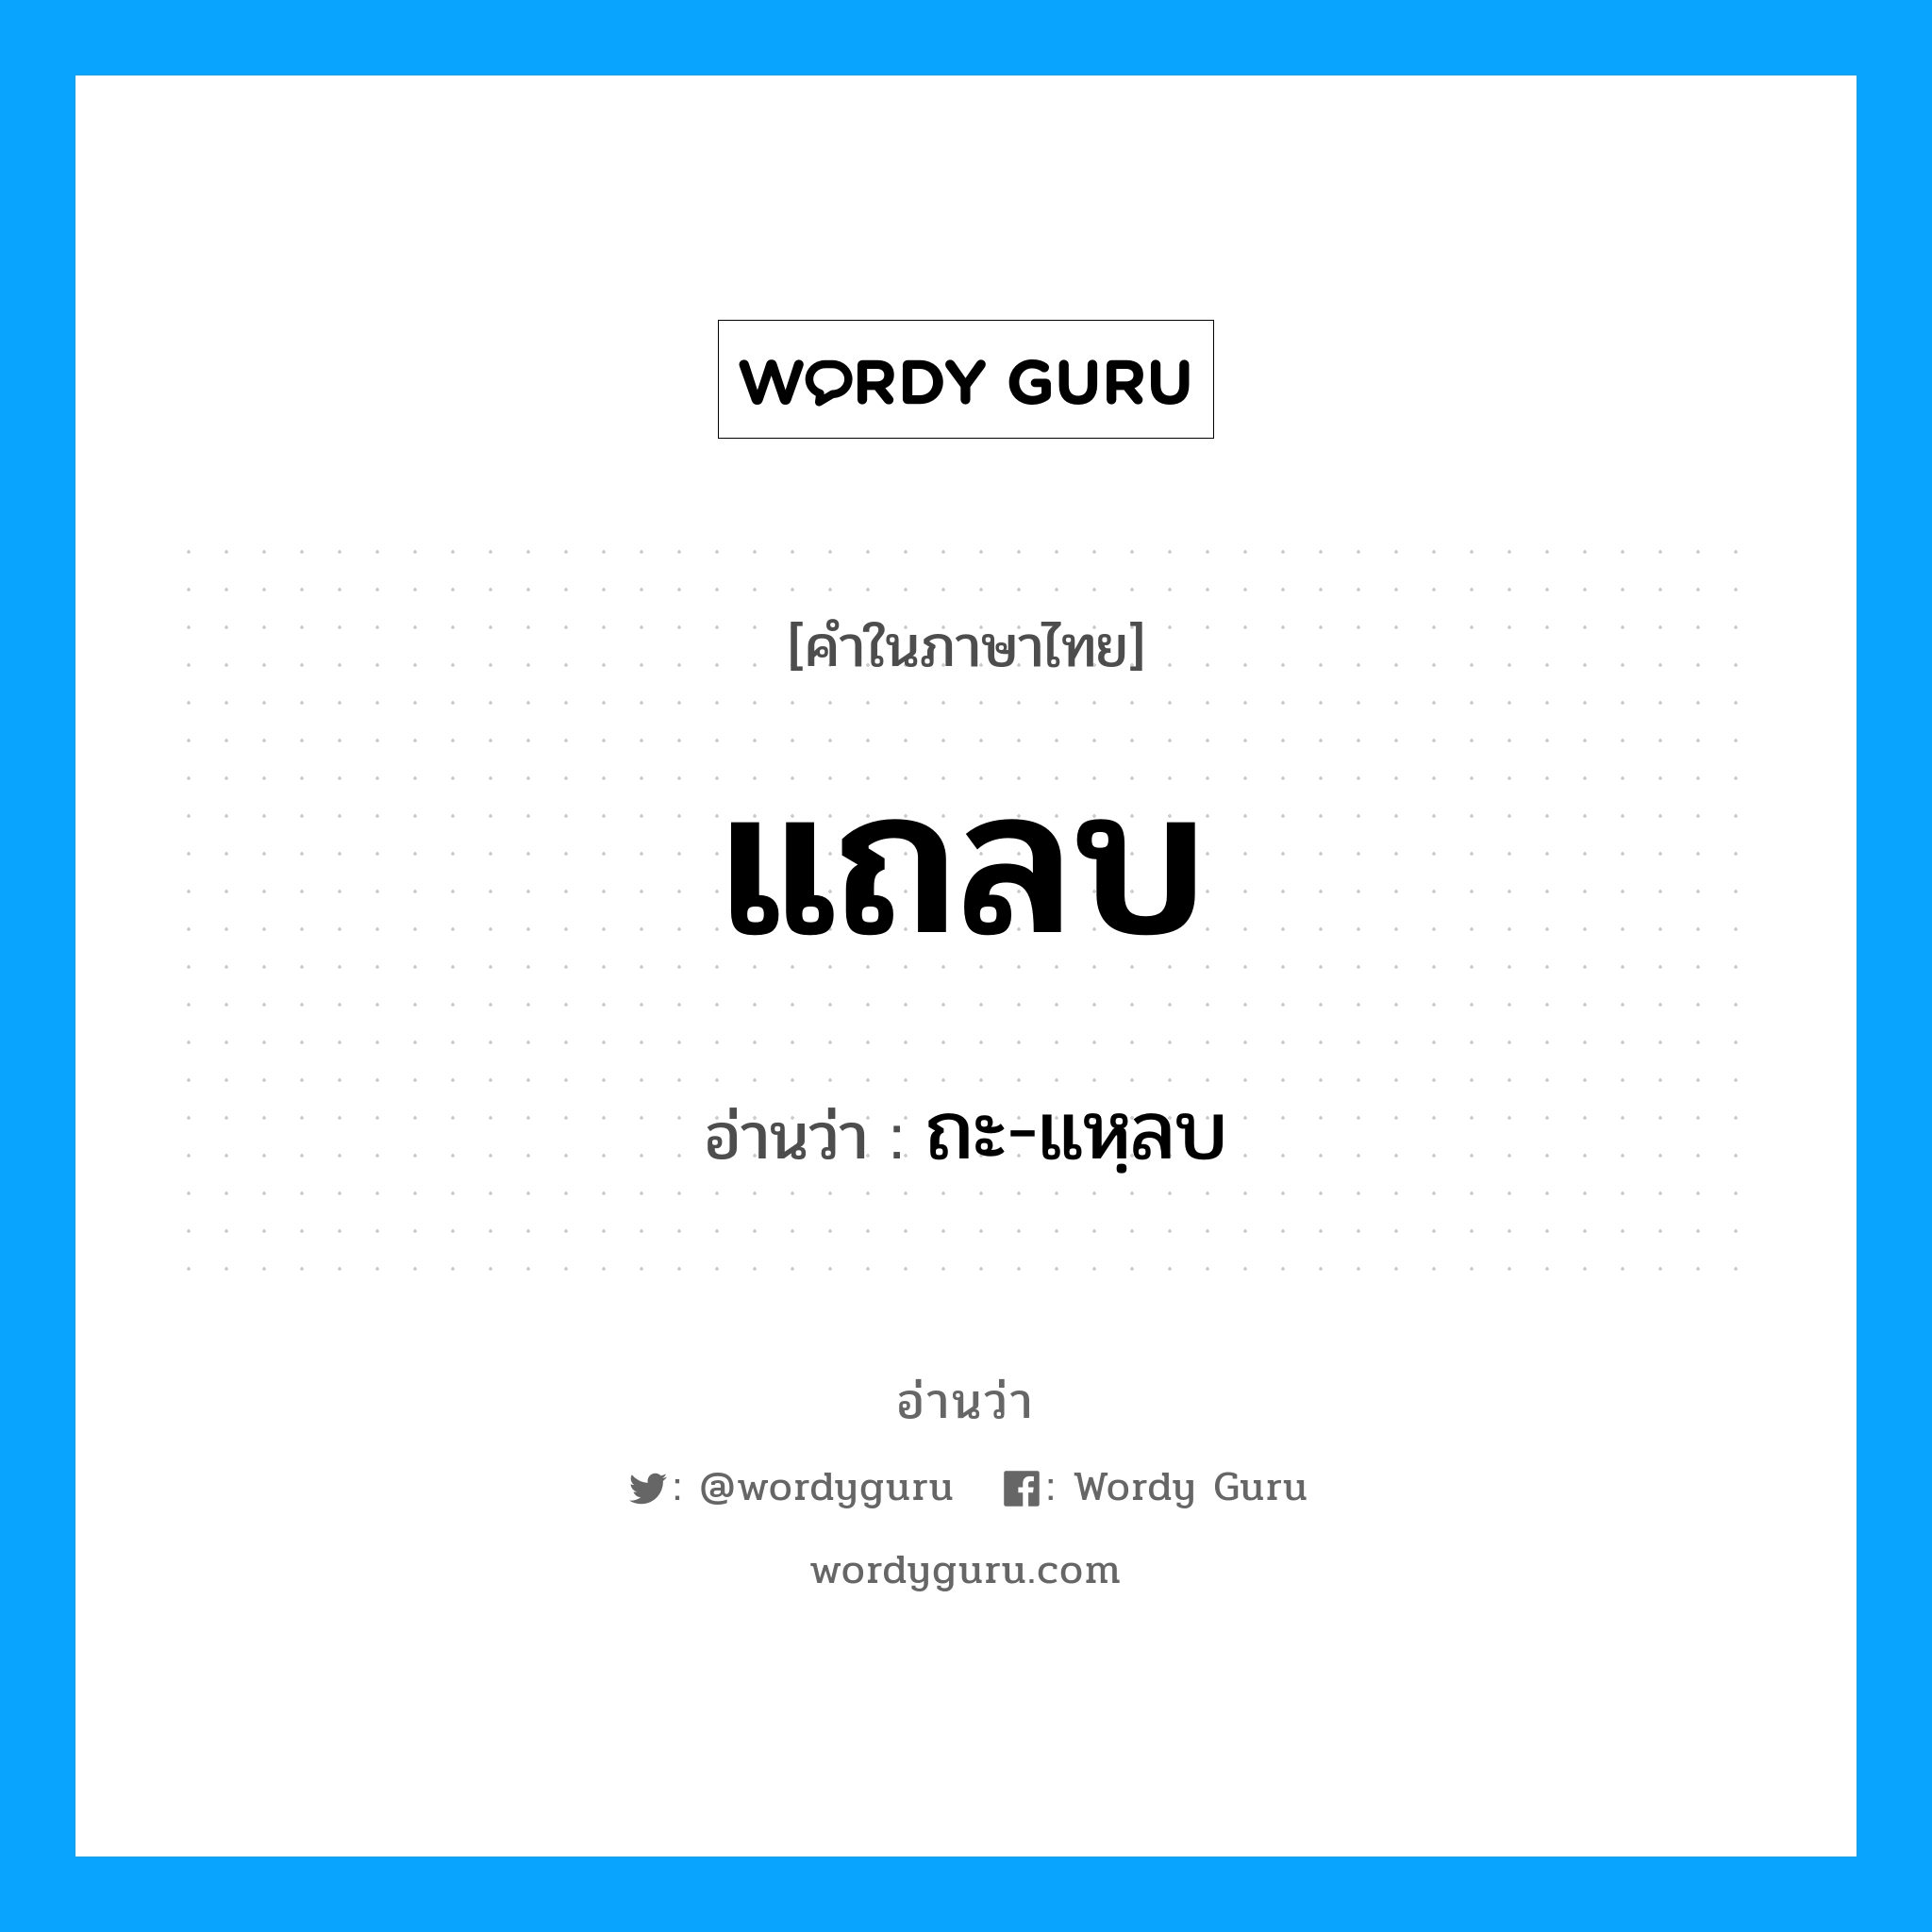 ถะ-แหฺลบ เป็นคำอ่านของคำไหน?, คำในภาษาไทย ถะ-แหฺลบ อ่านว่า แถลบ